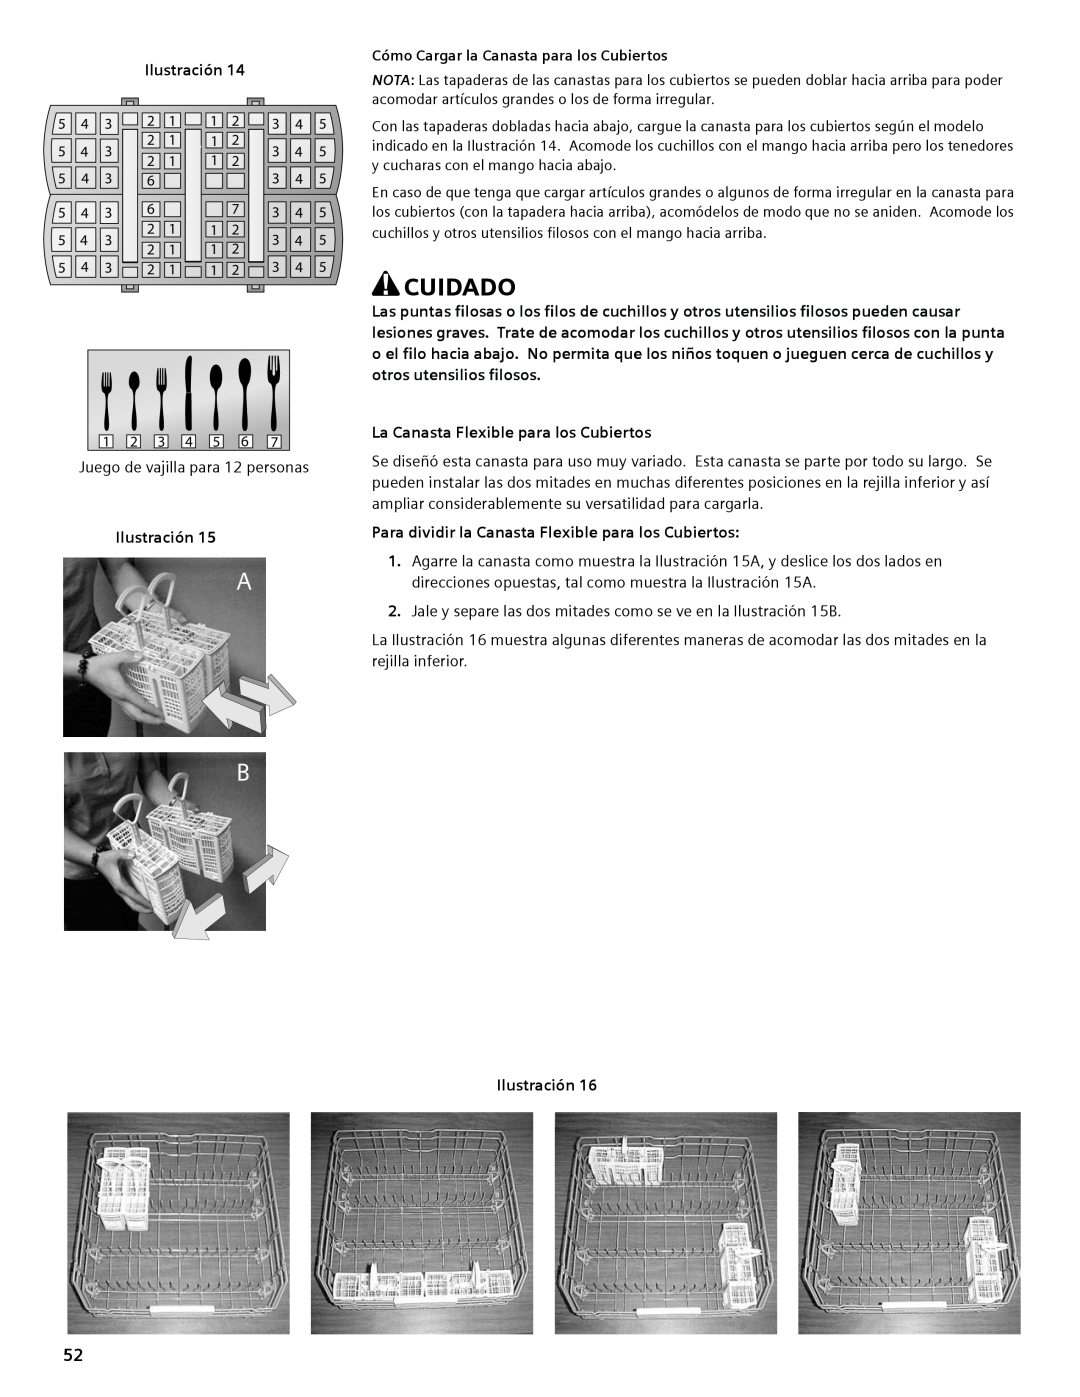 Thermador DWHD94EP, DWHD94BS, DWHD94BP manual Cuidado, Ilustración, La Canasta Flexible para los Cubiertos 